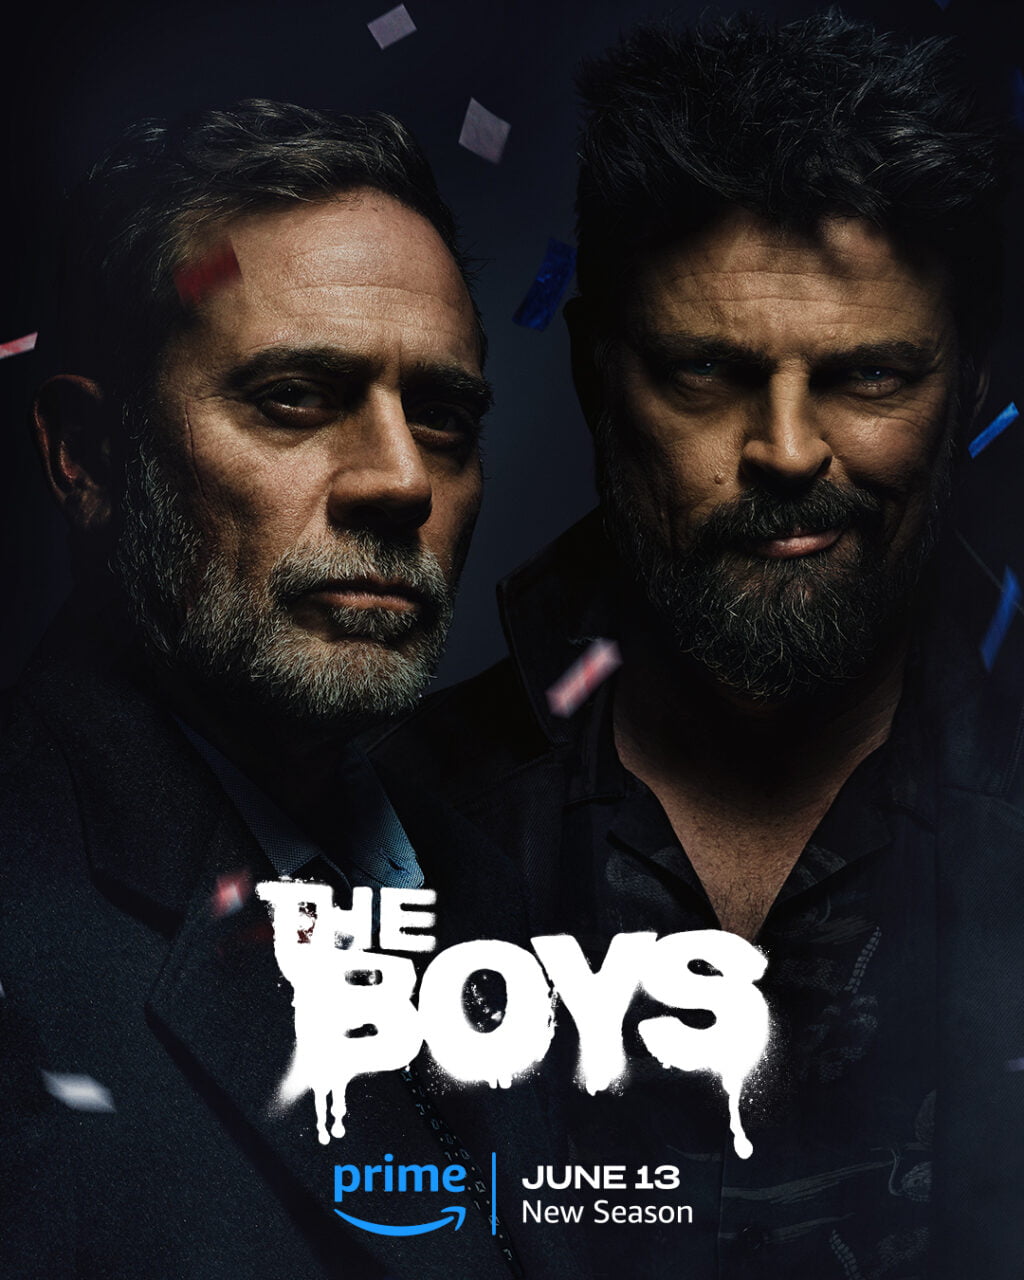 Dwóch mężczyzn z brodami na ciemnym tle, reklama serialu "The Boys", premiera nowego sezonu 13 czerwca na Amazon Prime.